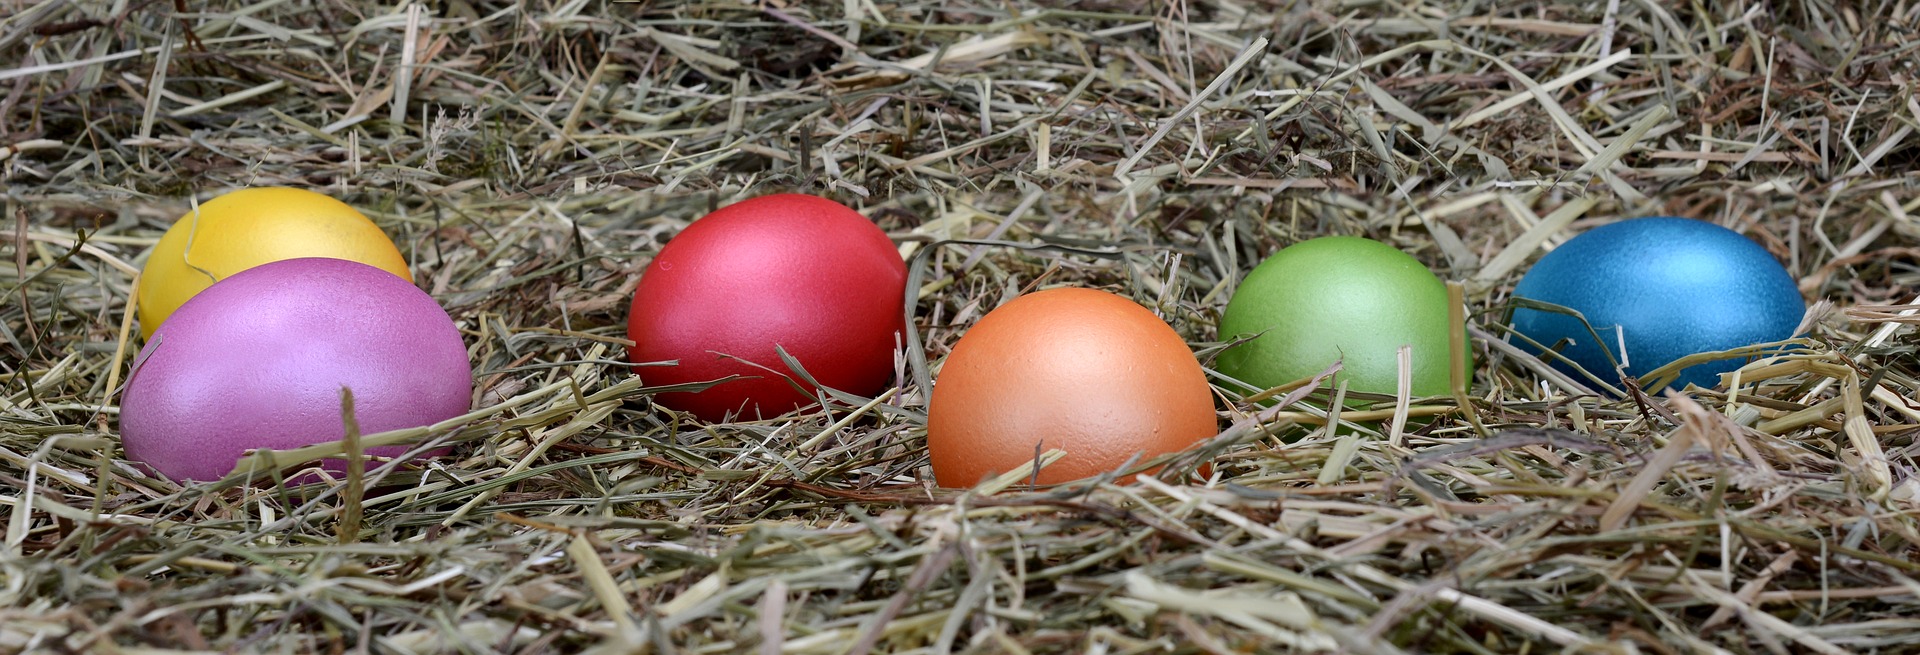 Huevos de Pascua coloridos sobre paja